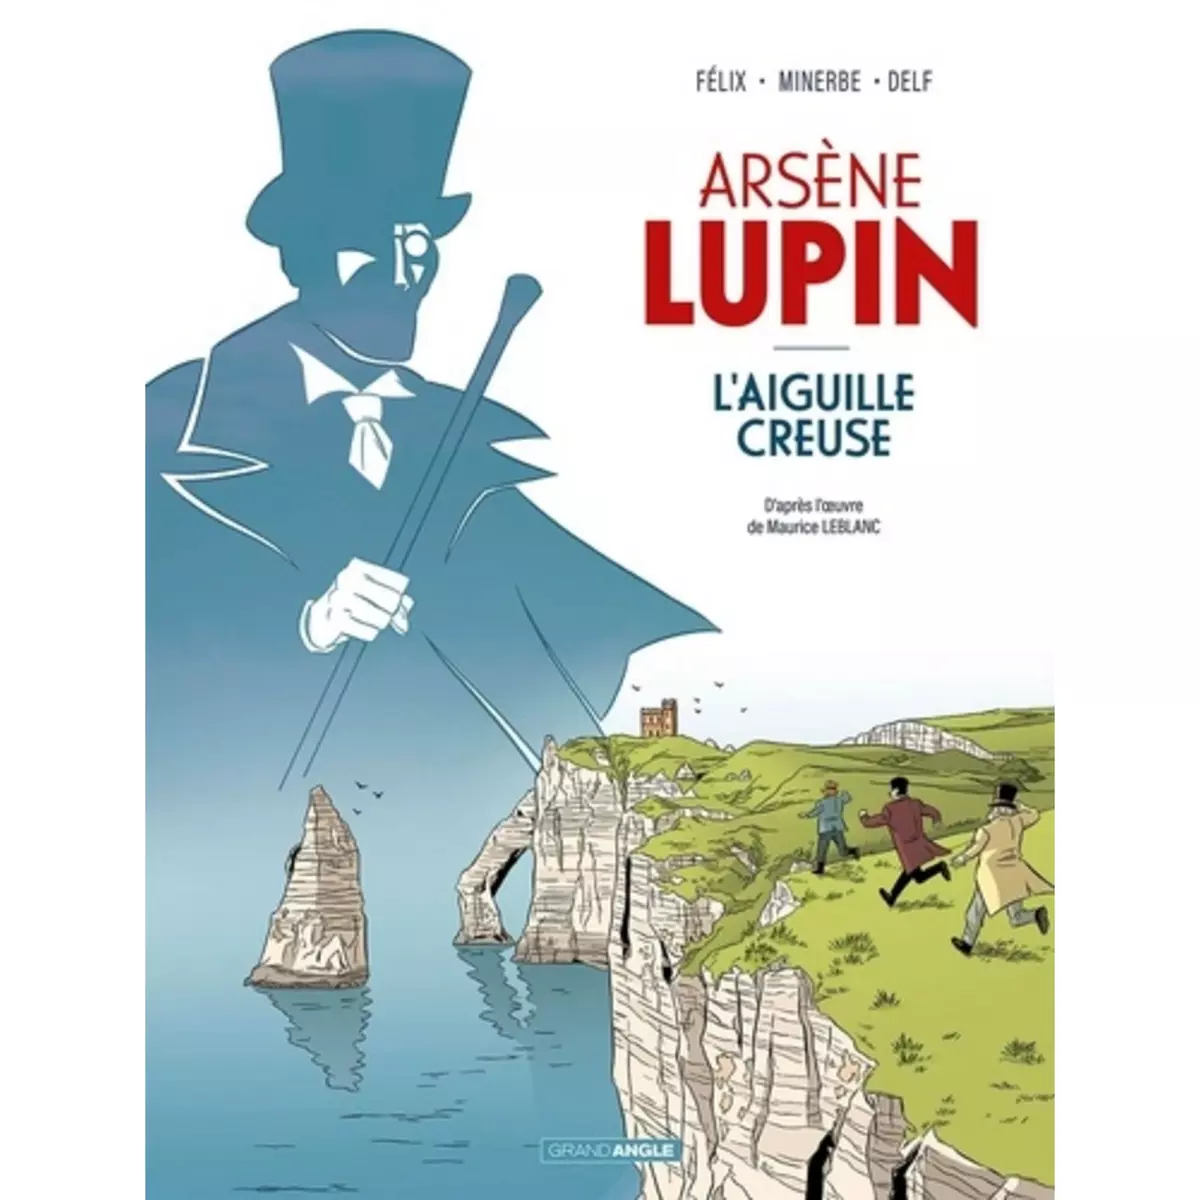  ARSENE LUPIN TOME 1 : L'AIGUILLE CREUSE, Félix Jérôme